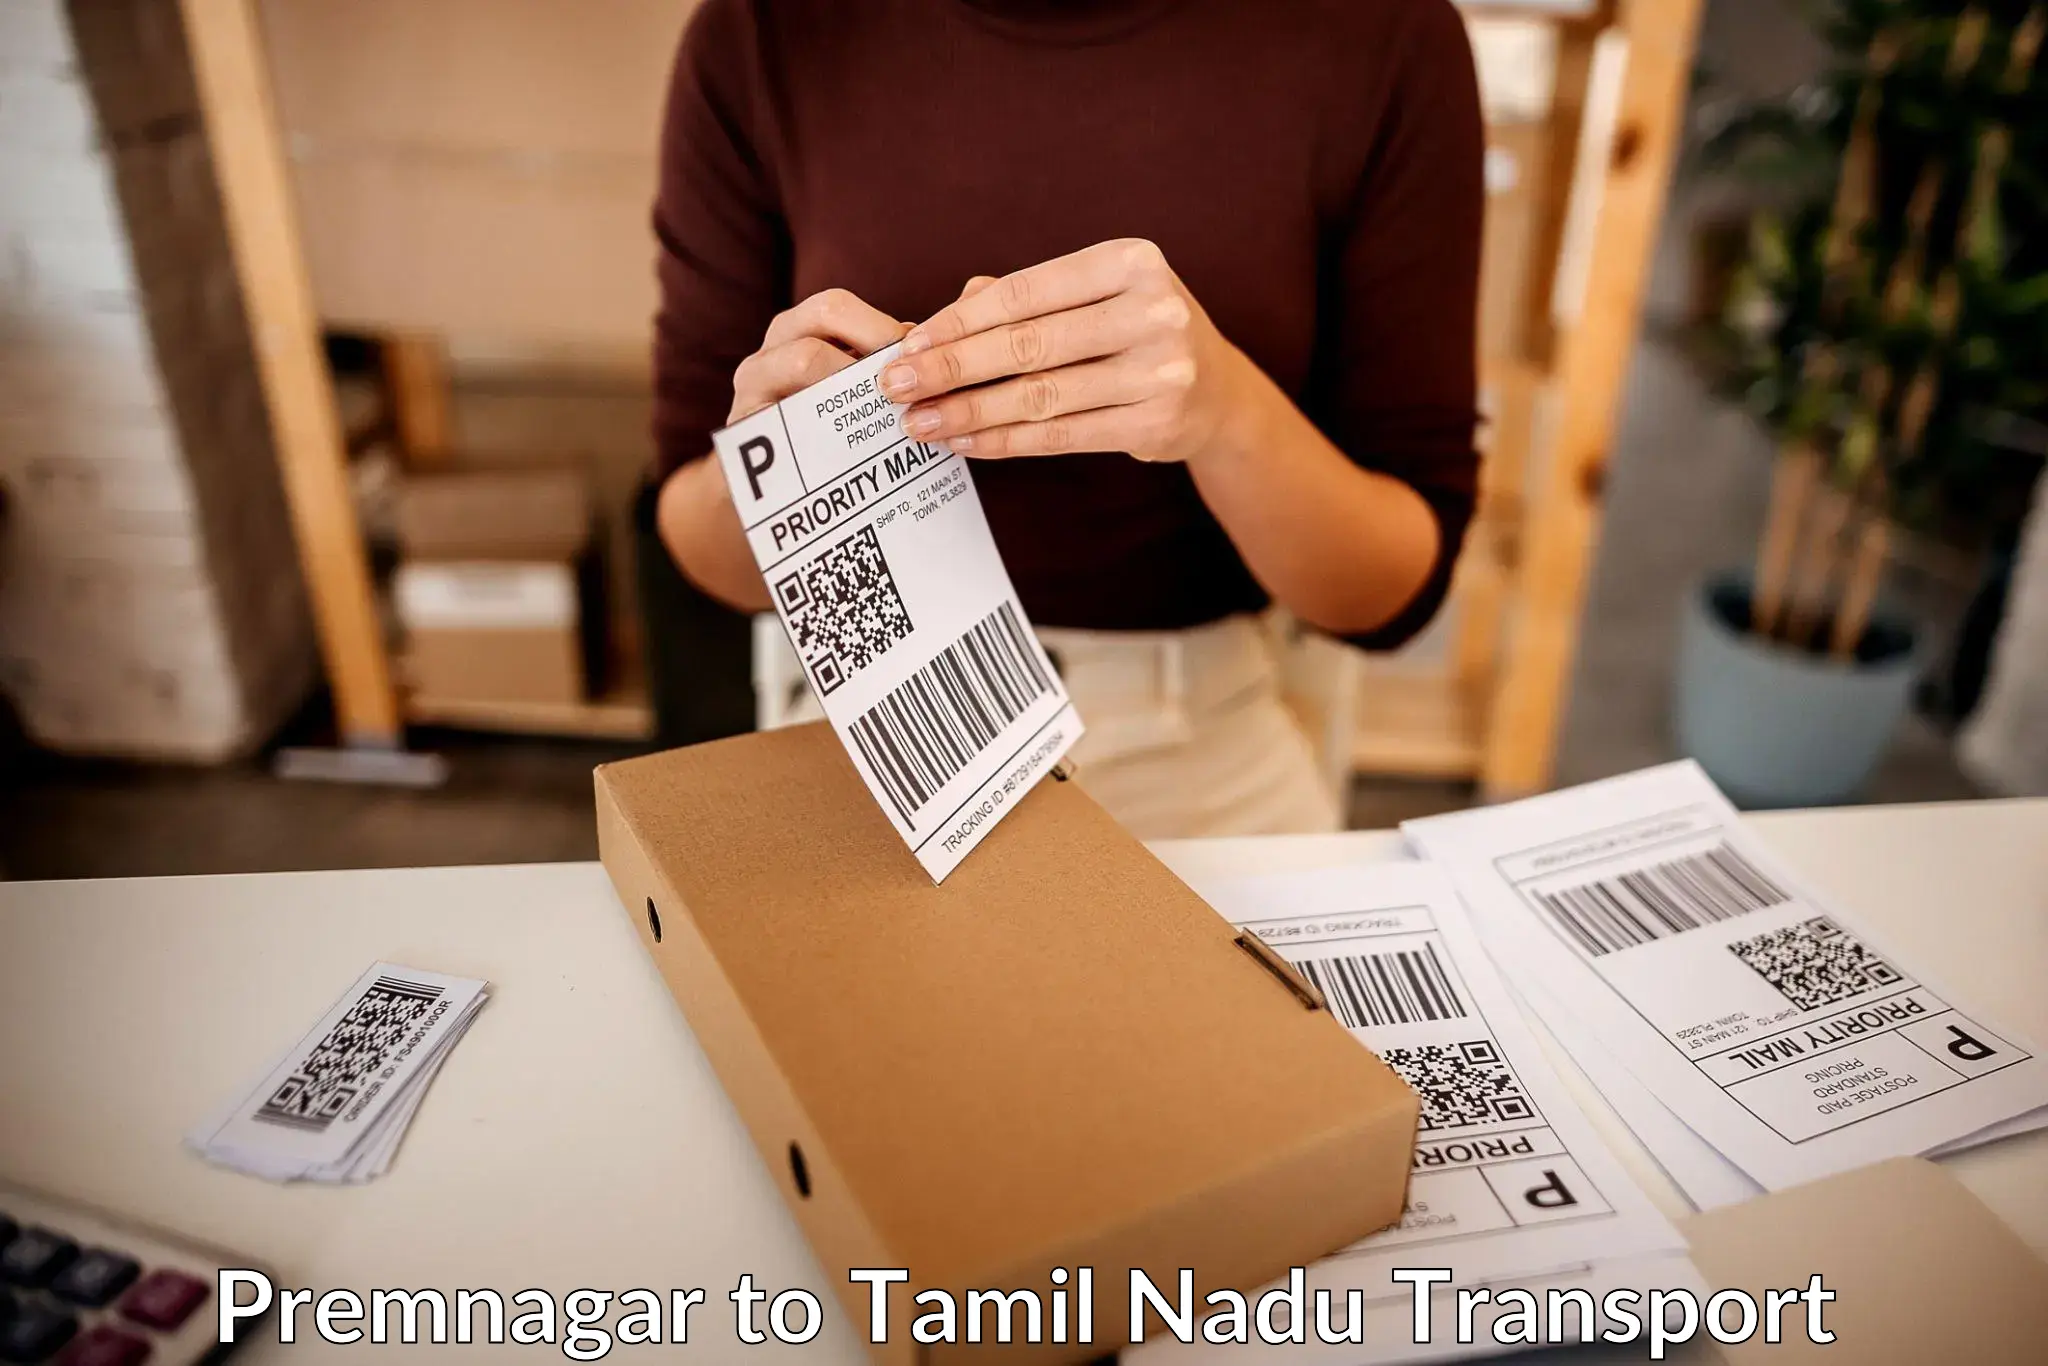 International cargo transportation services Premnagar to Tiruchendur